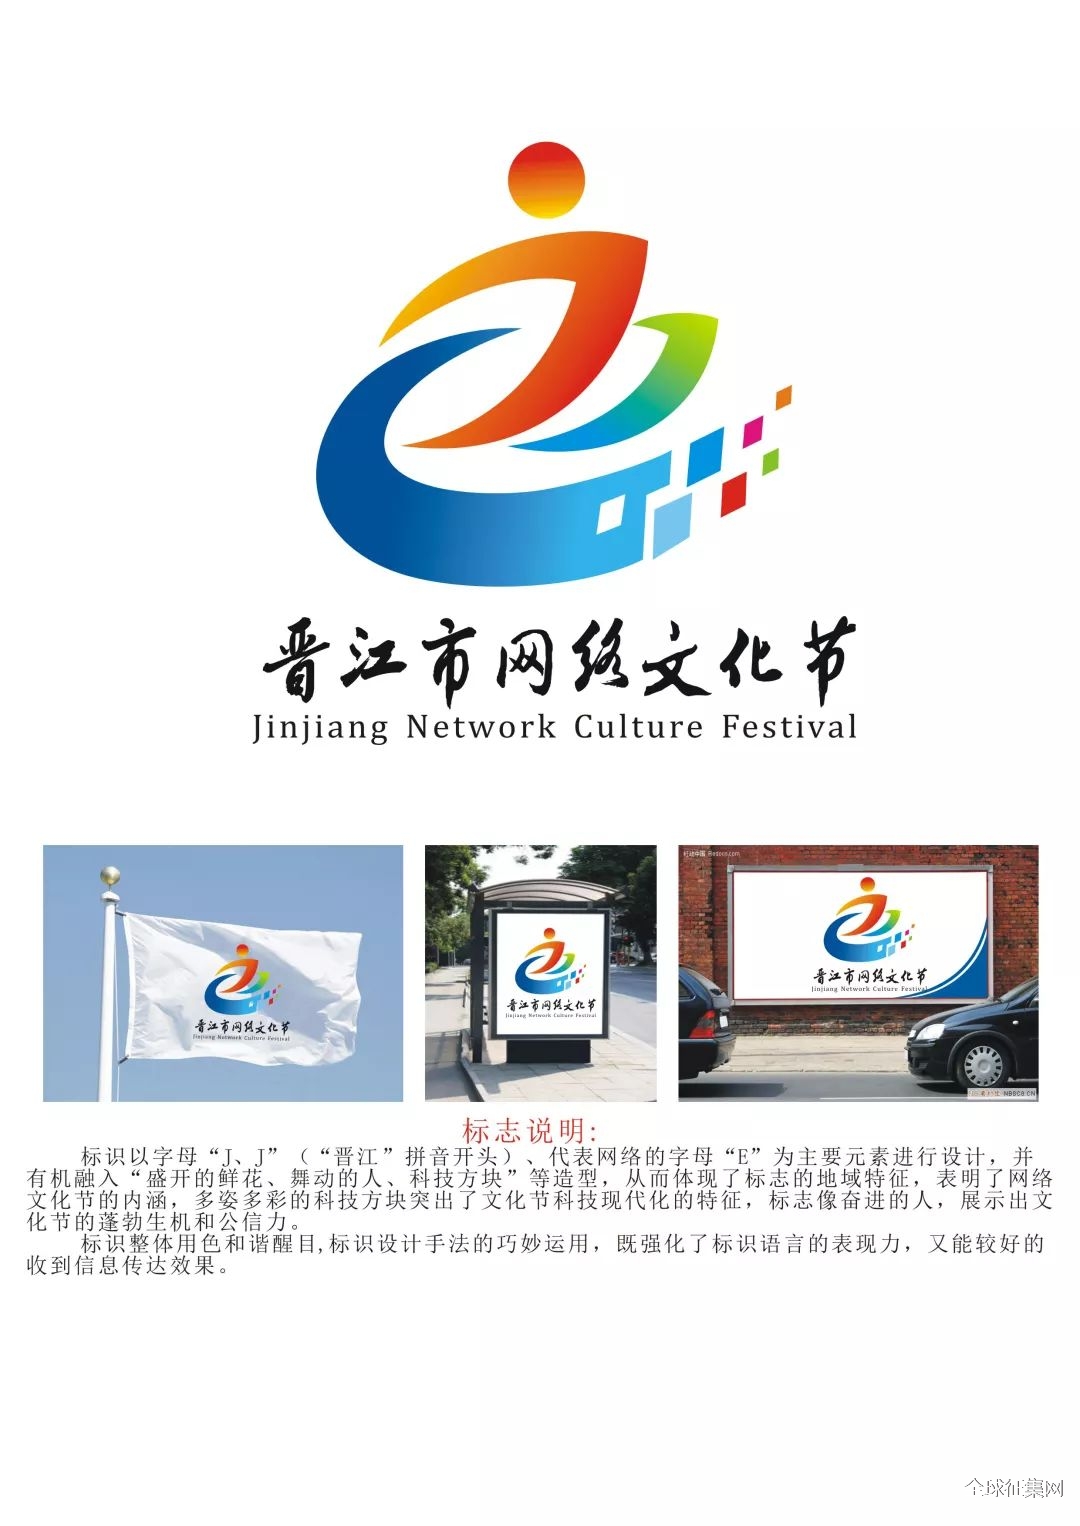 晋江市网络文化节logo创意设计大赛结果出炉大赛结果出炉